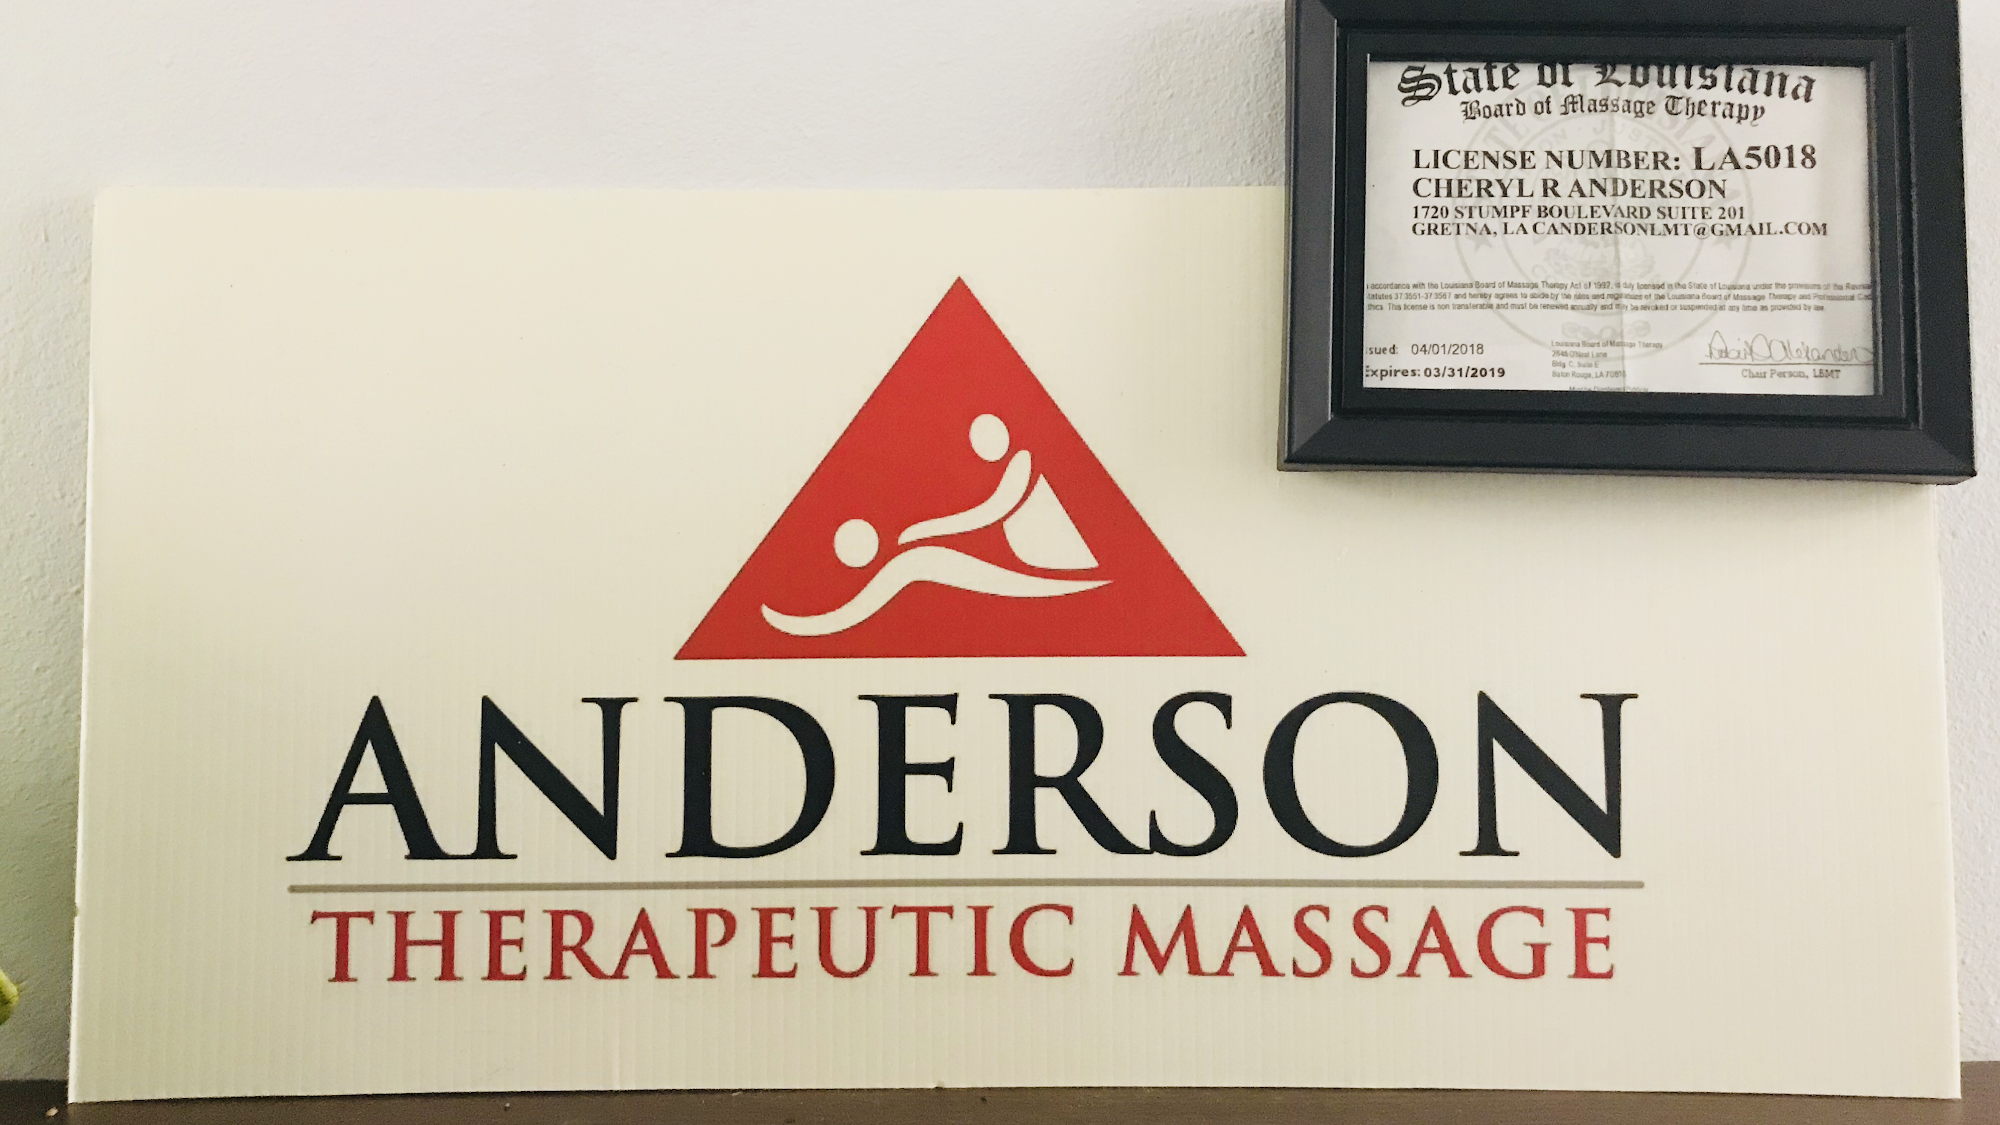 Anderson Therapeutic Massage